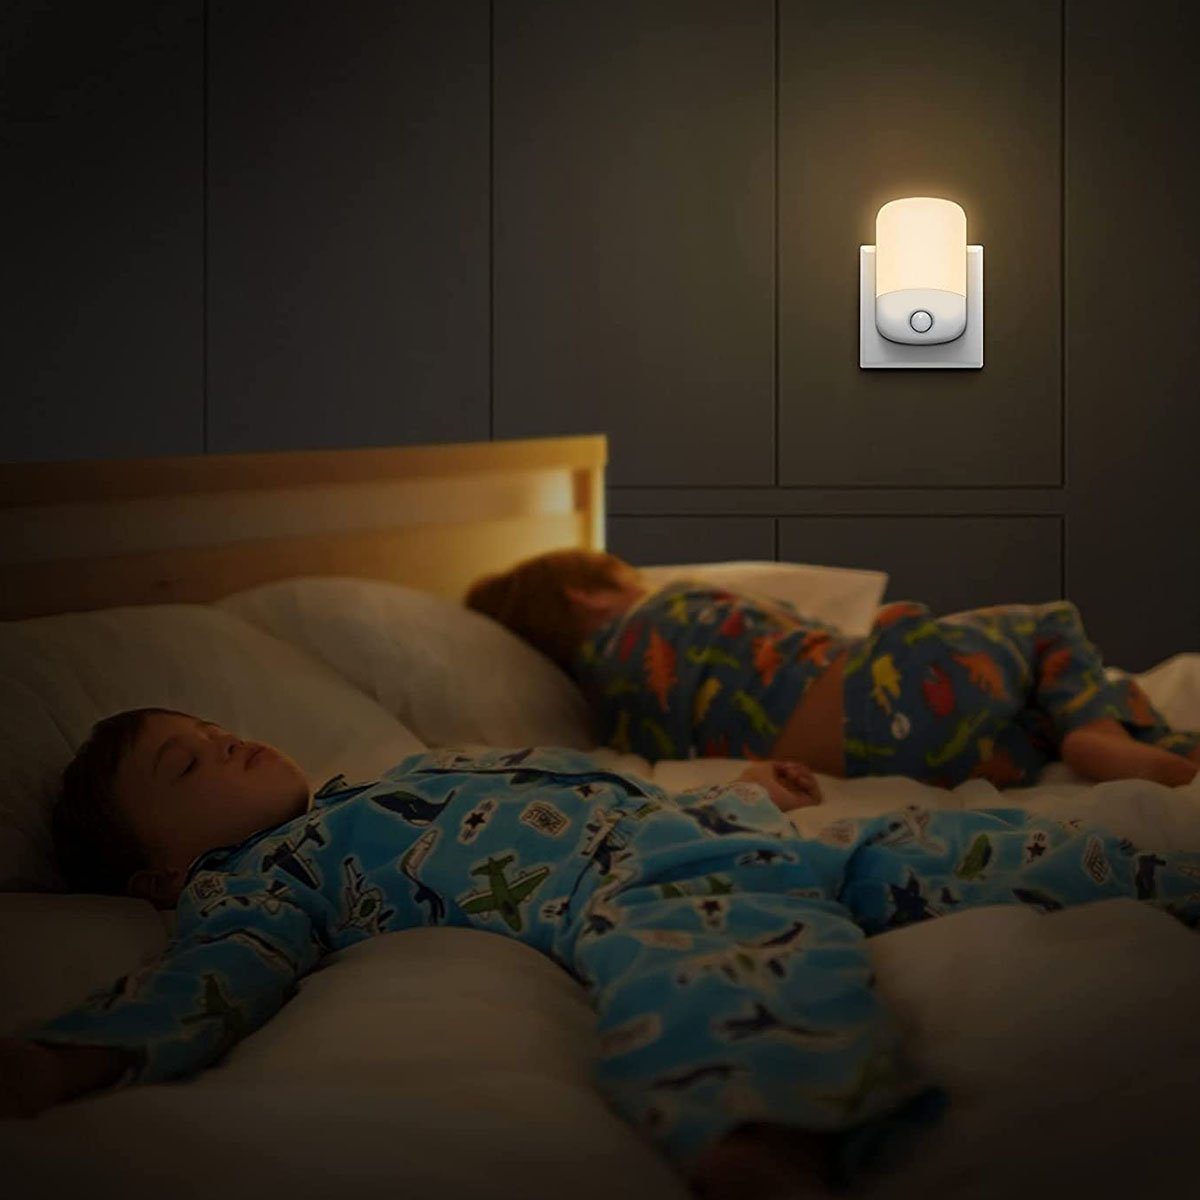 LED LETGOSPT Warmweiß LED Notlicht 2x mit Nachtlicht Bewegungsmelder, Steckdose Nachtlicht LED Nachtlicht Licht, Sensor